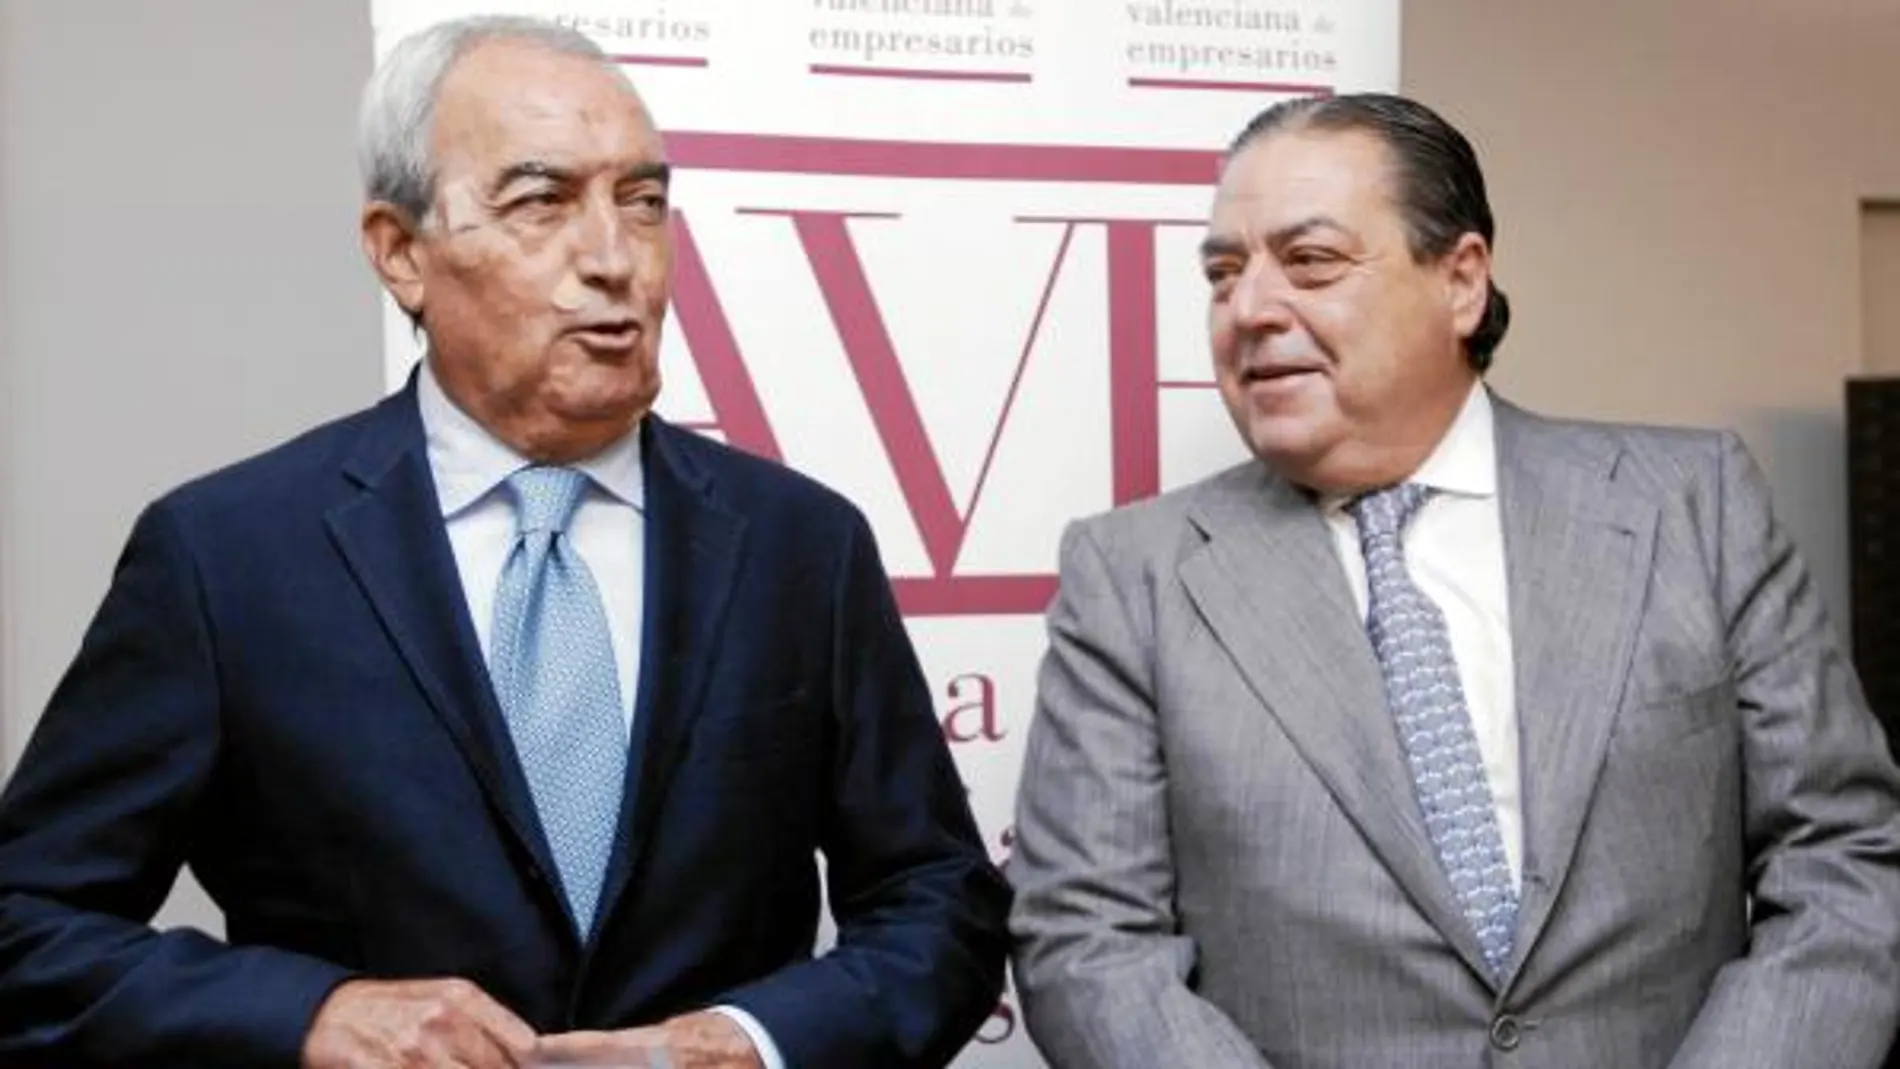 Federico Félix y el presidente de AVE, Vicente Boluda en una imagen de archivo